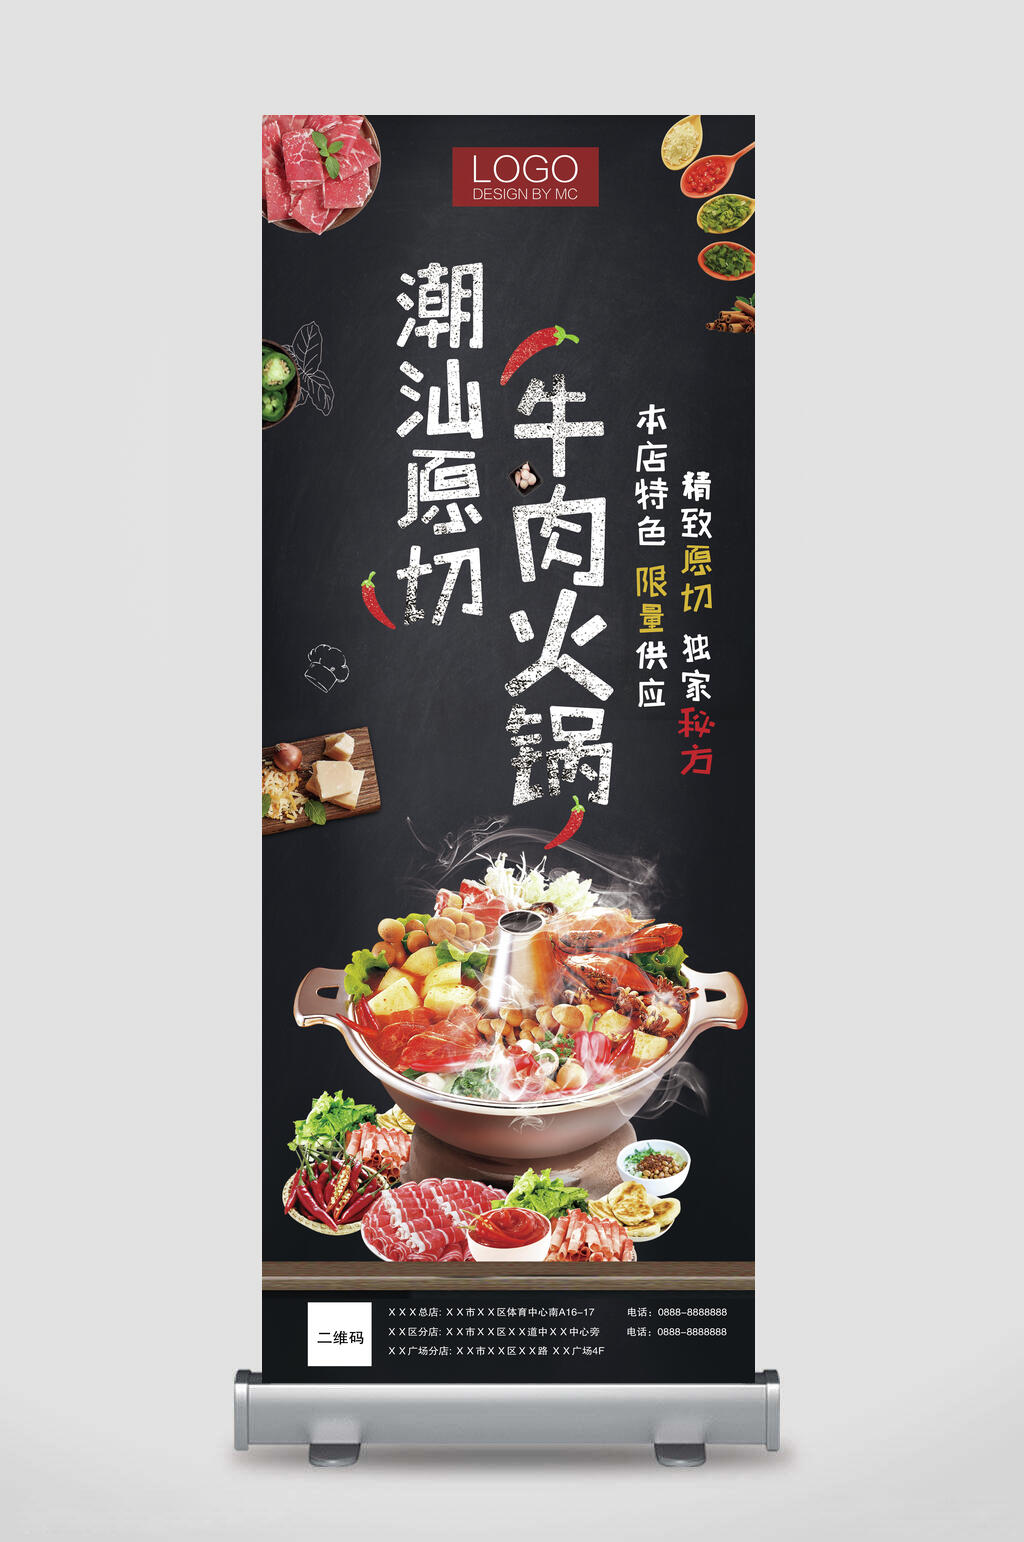 众图网独家提供潮汕原切牛肉火锅美食宣传展架素材免费下载,本作品是